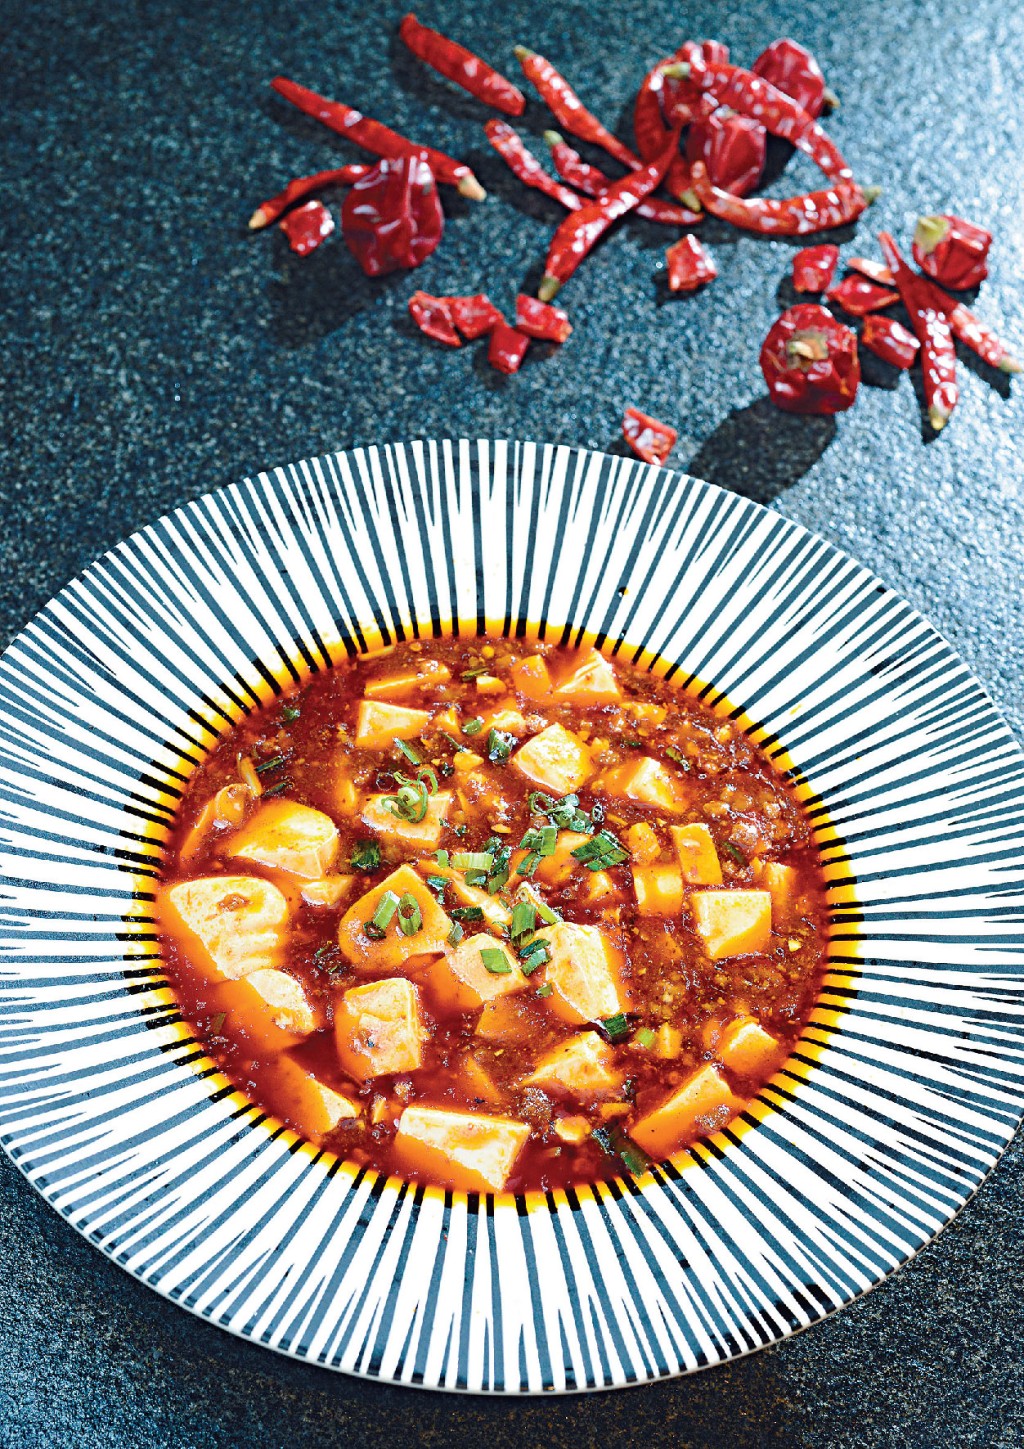 麻婆豆腐中的重要材料辣椒， 於明朝傳入中國。